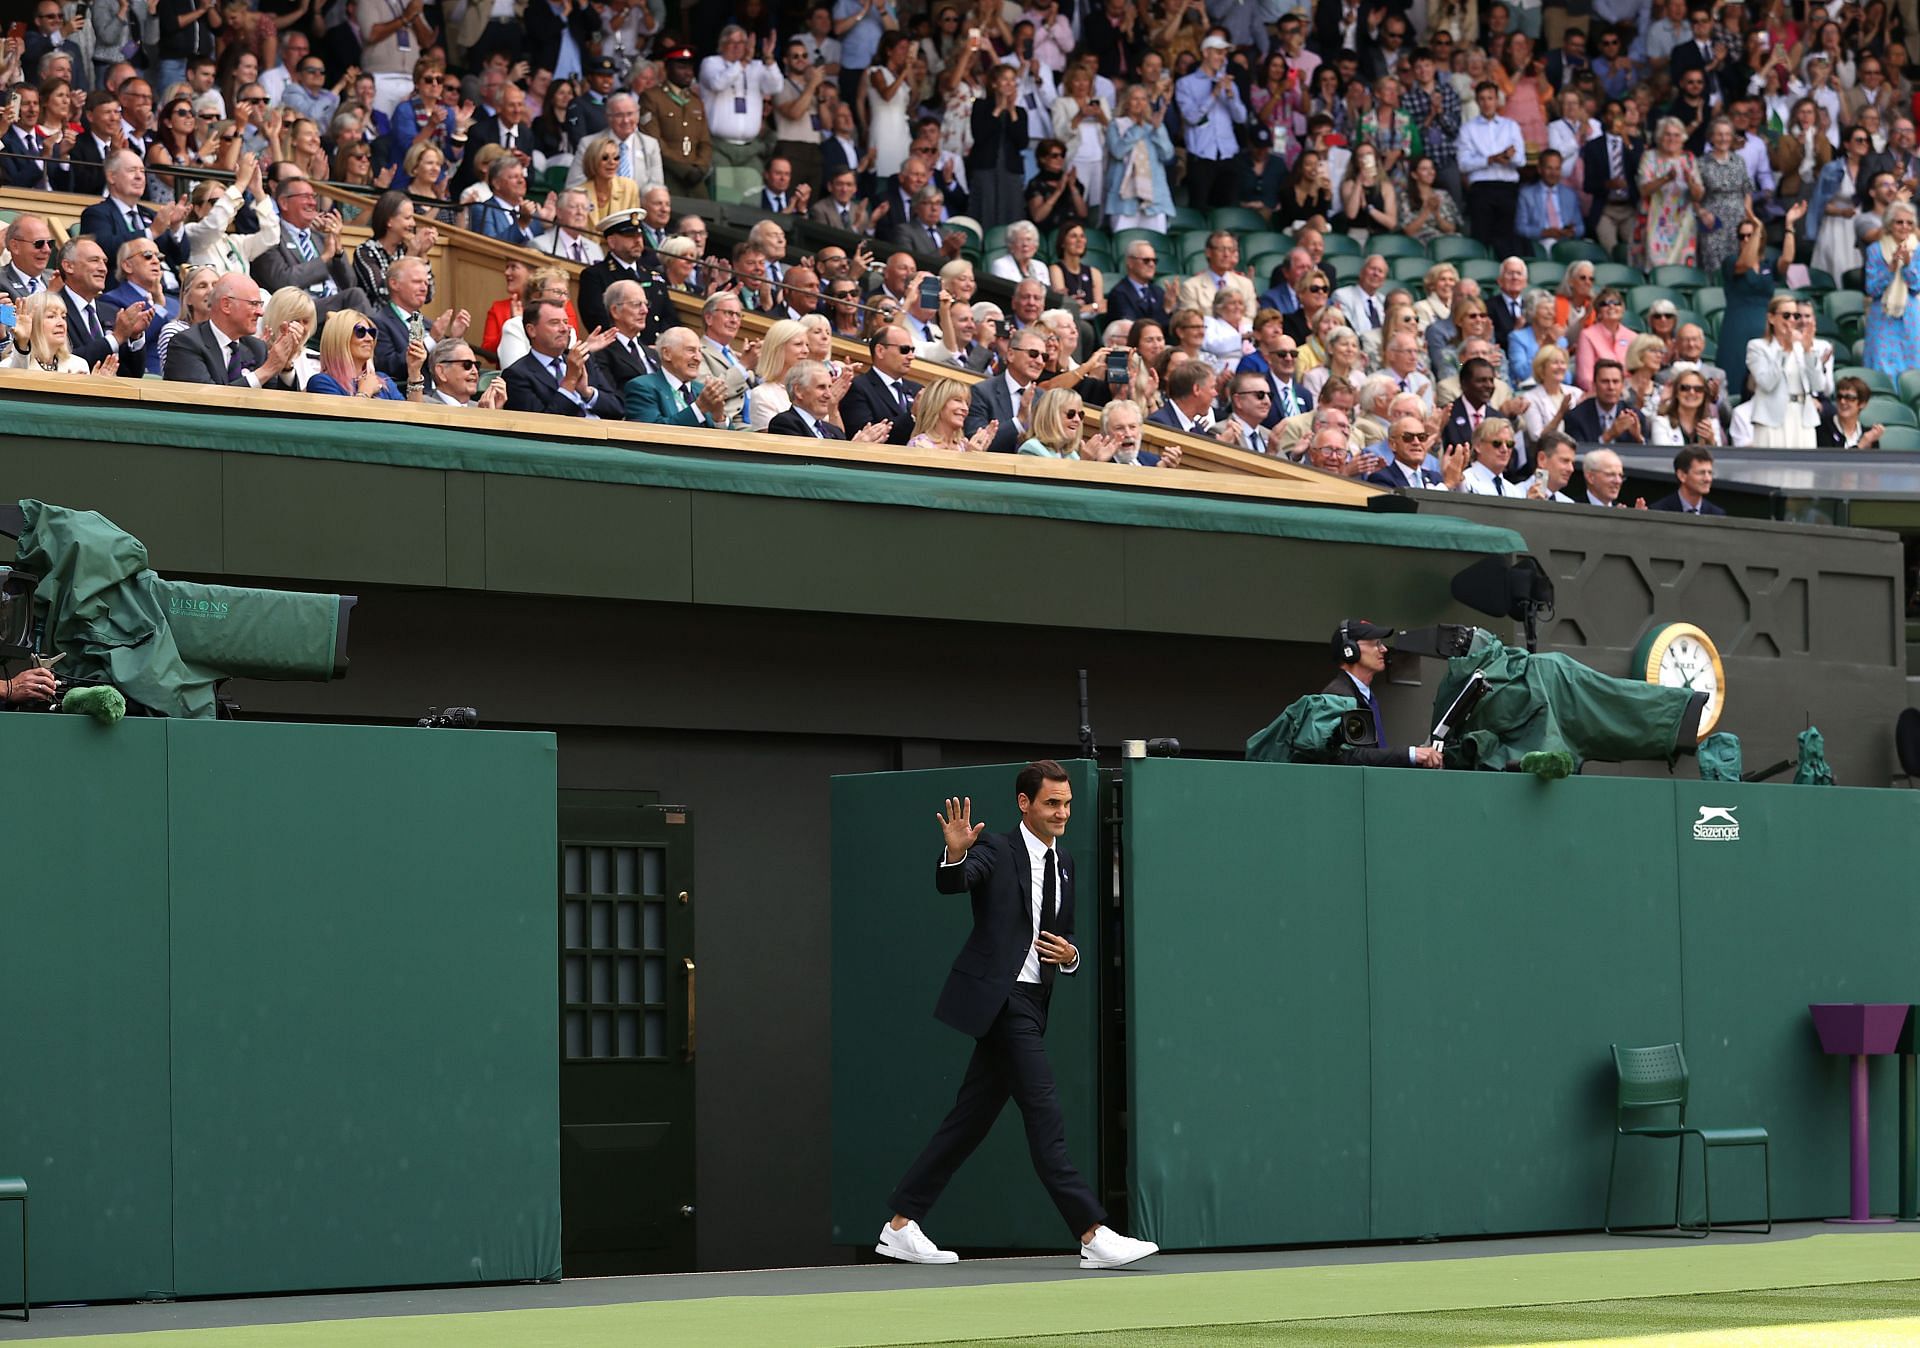 Roger Federer entering Centre Court